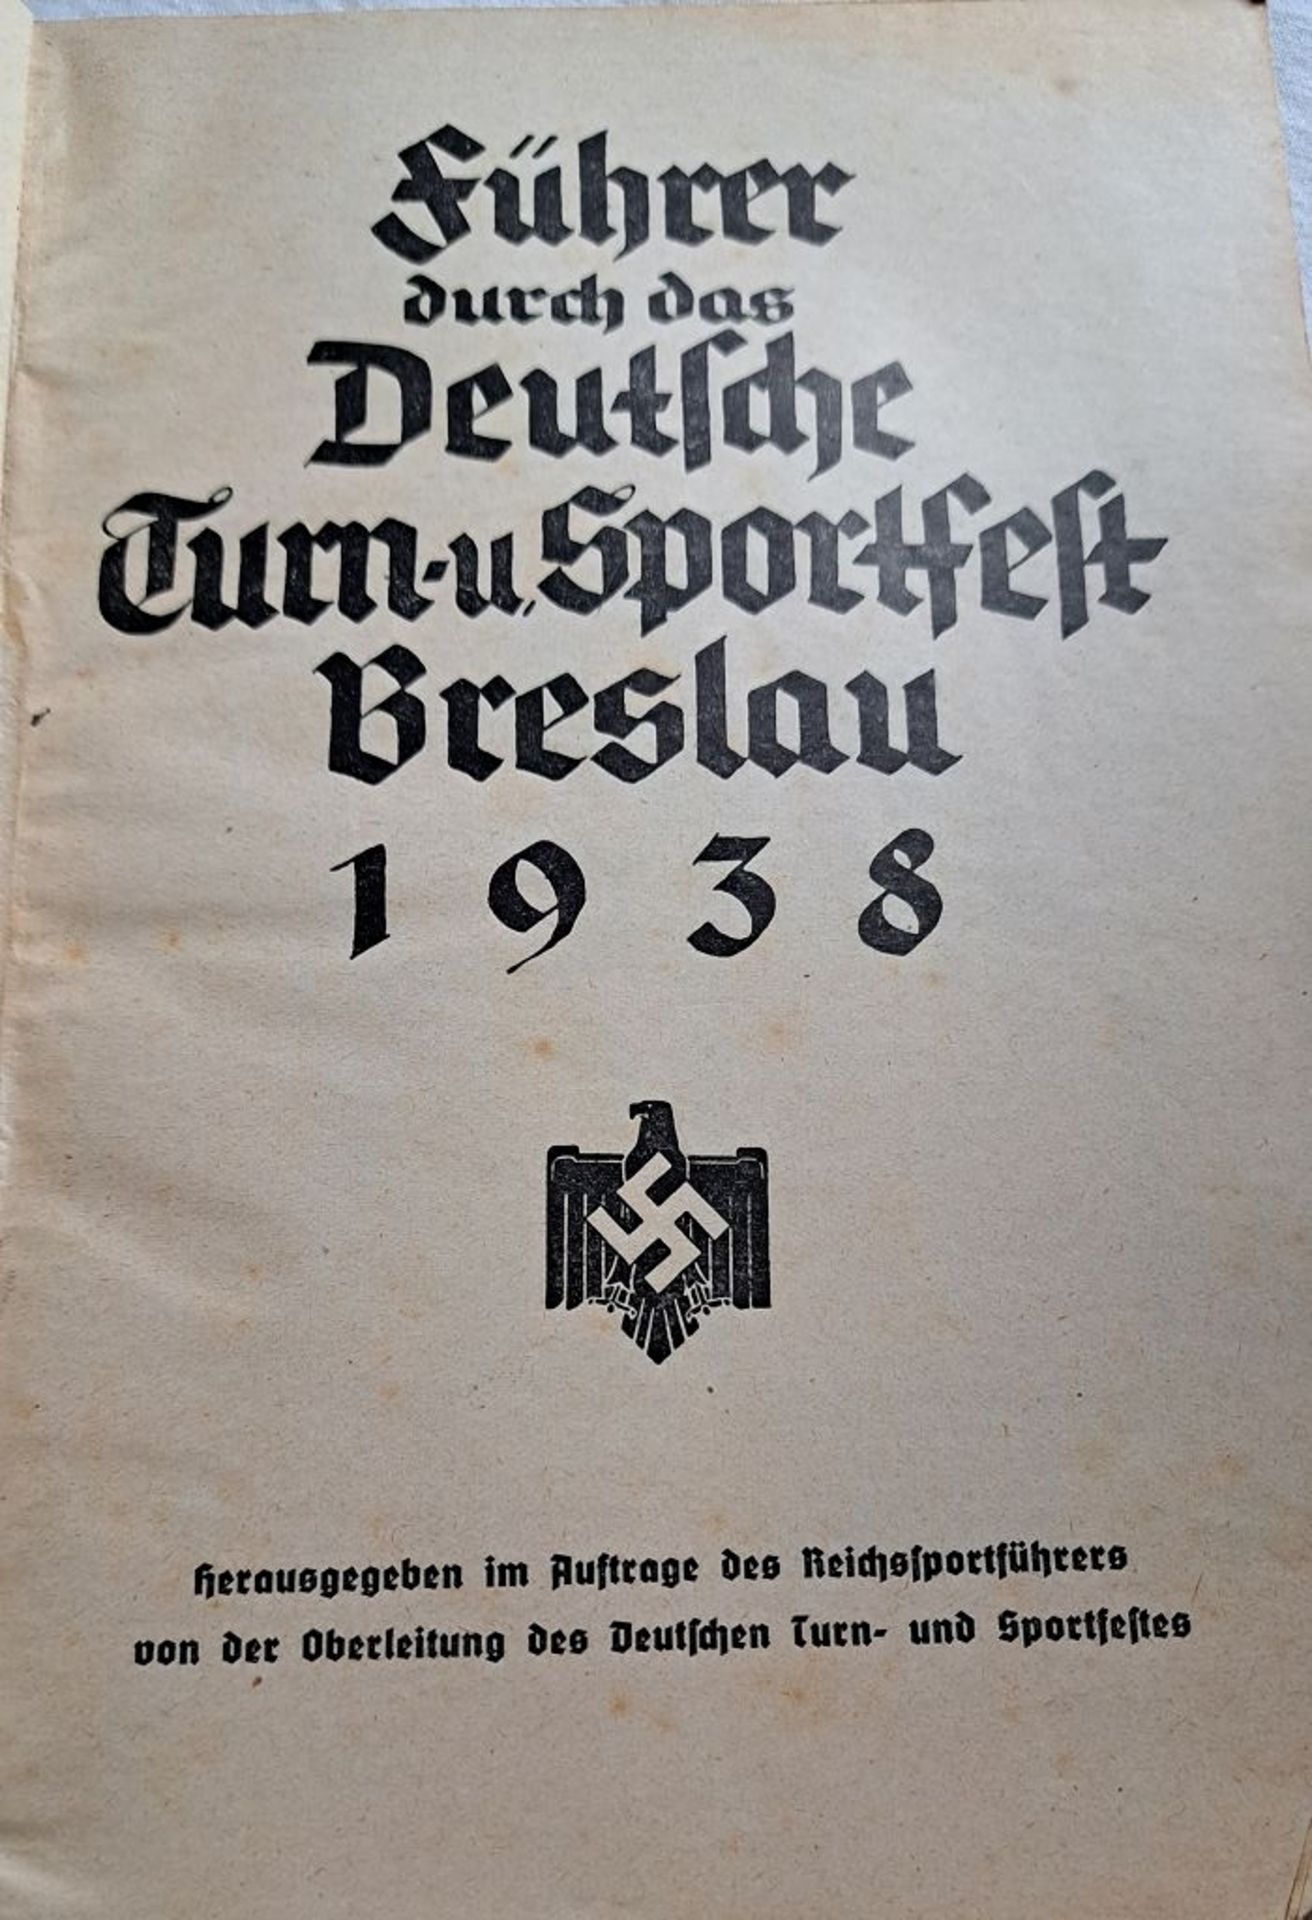 WKII Deutsches Turn + Sportheft 1938 in Breslau - Image 3 of 5